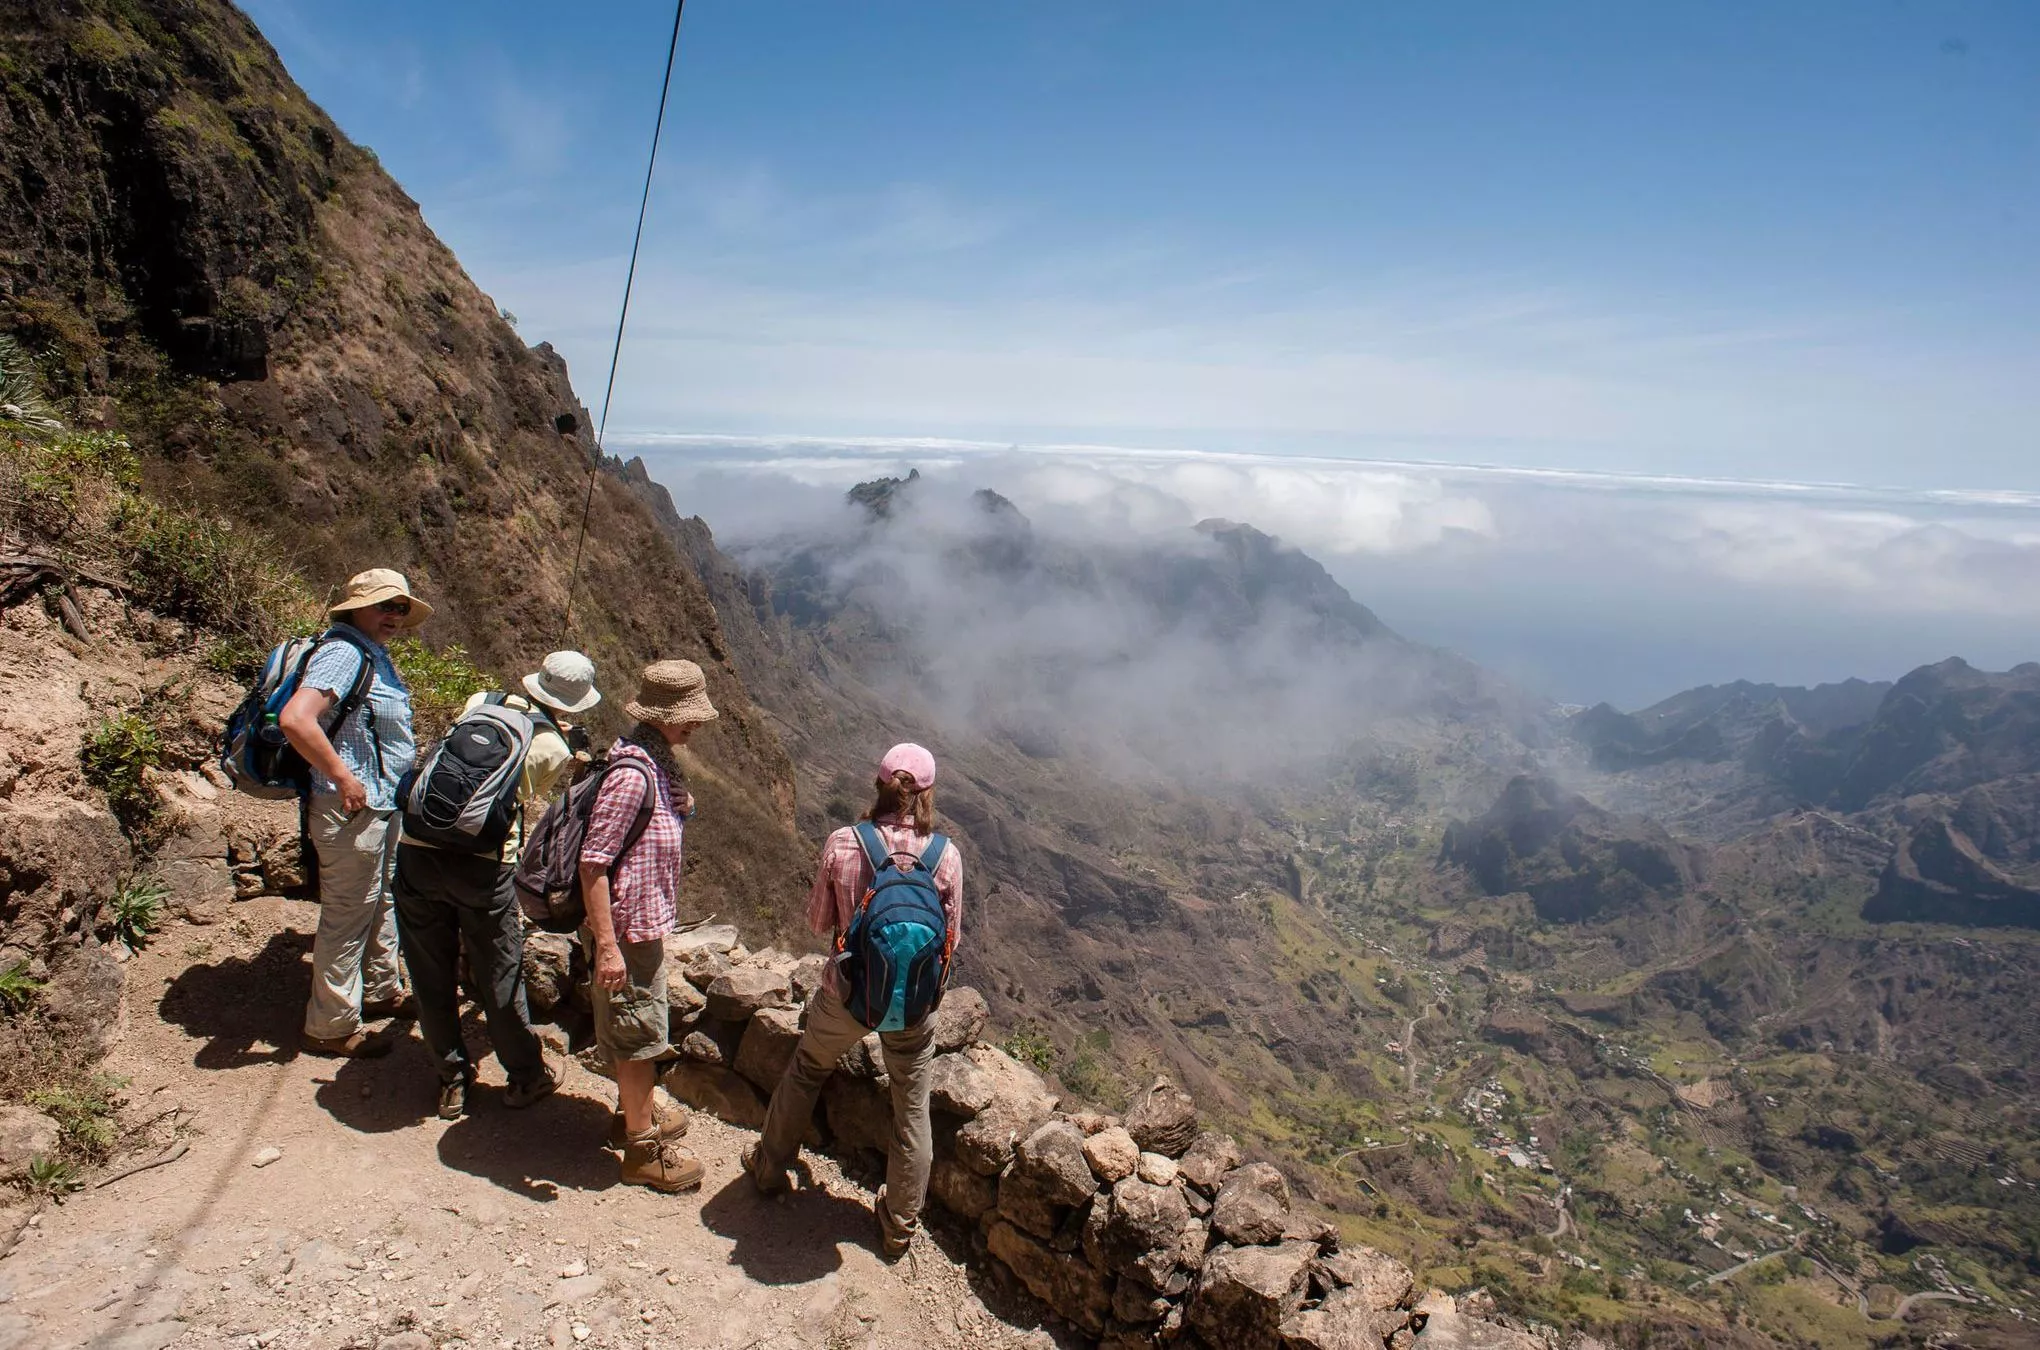 Beim Wandern auf Santo Antao bieten sich Weitblicke über Täler und Berge – und im Hintergrund blitzt immer wieder der Ozean auf